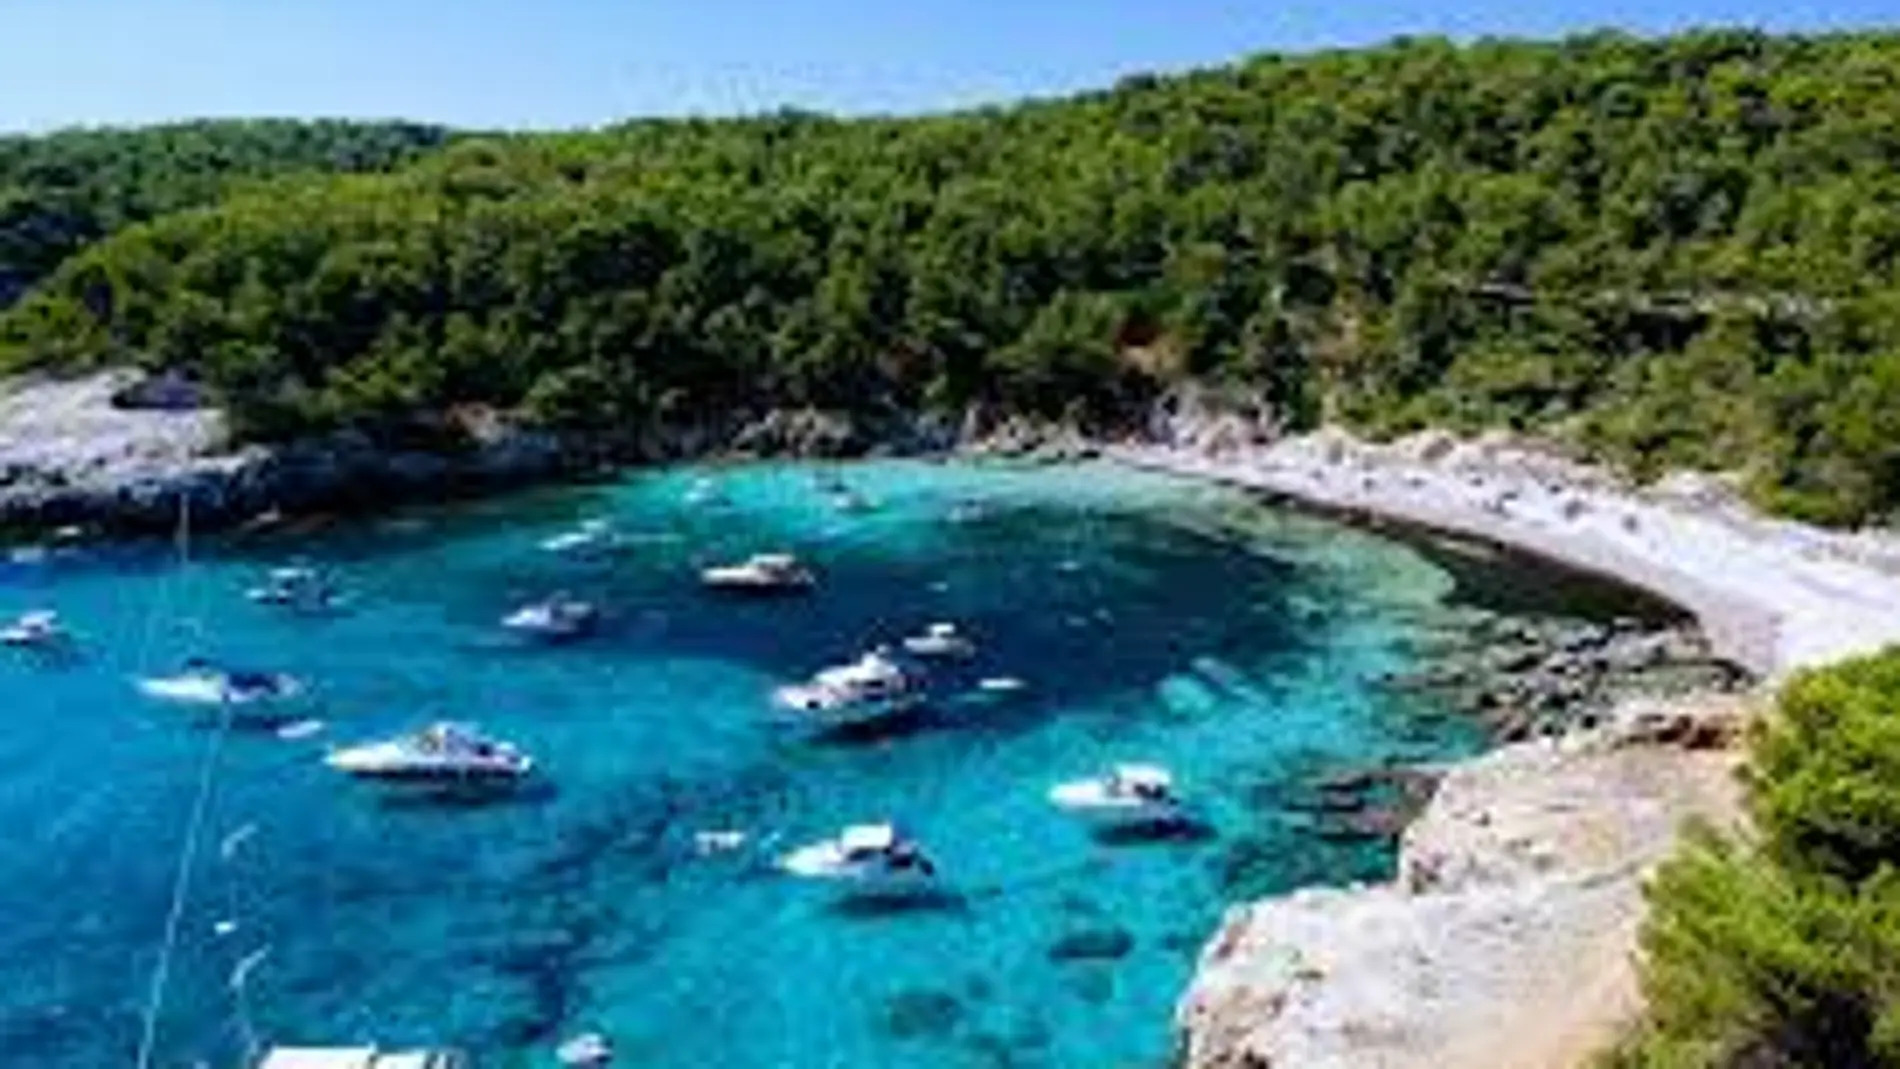 Menorca está considerado como uno de los mejores paraísos de calas